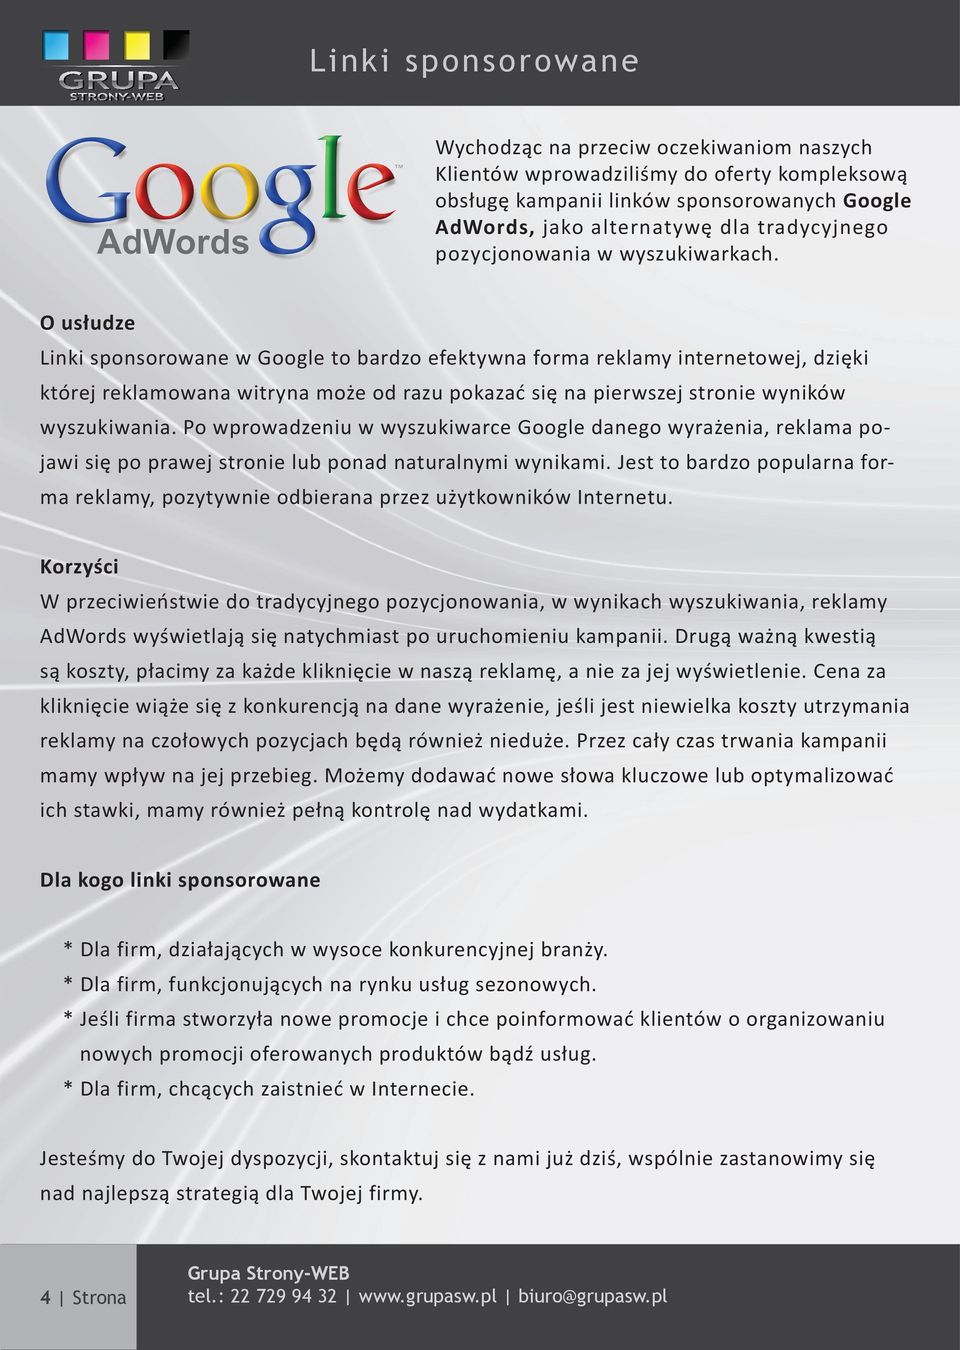 O usłudze Linki sponsorowane w Google to bardzo efektywna forma reklamy internetowej, dzięki której reklamowana witryna może od razu pokazać się na pierwszej stronie wyników wyszukiwania.